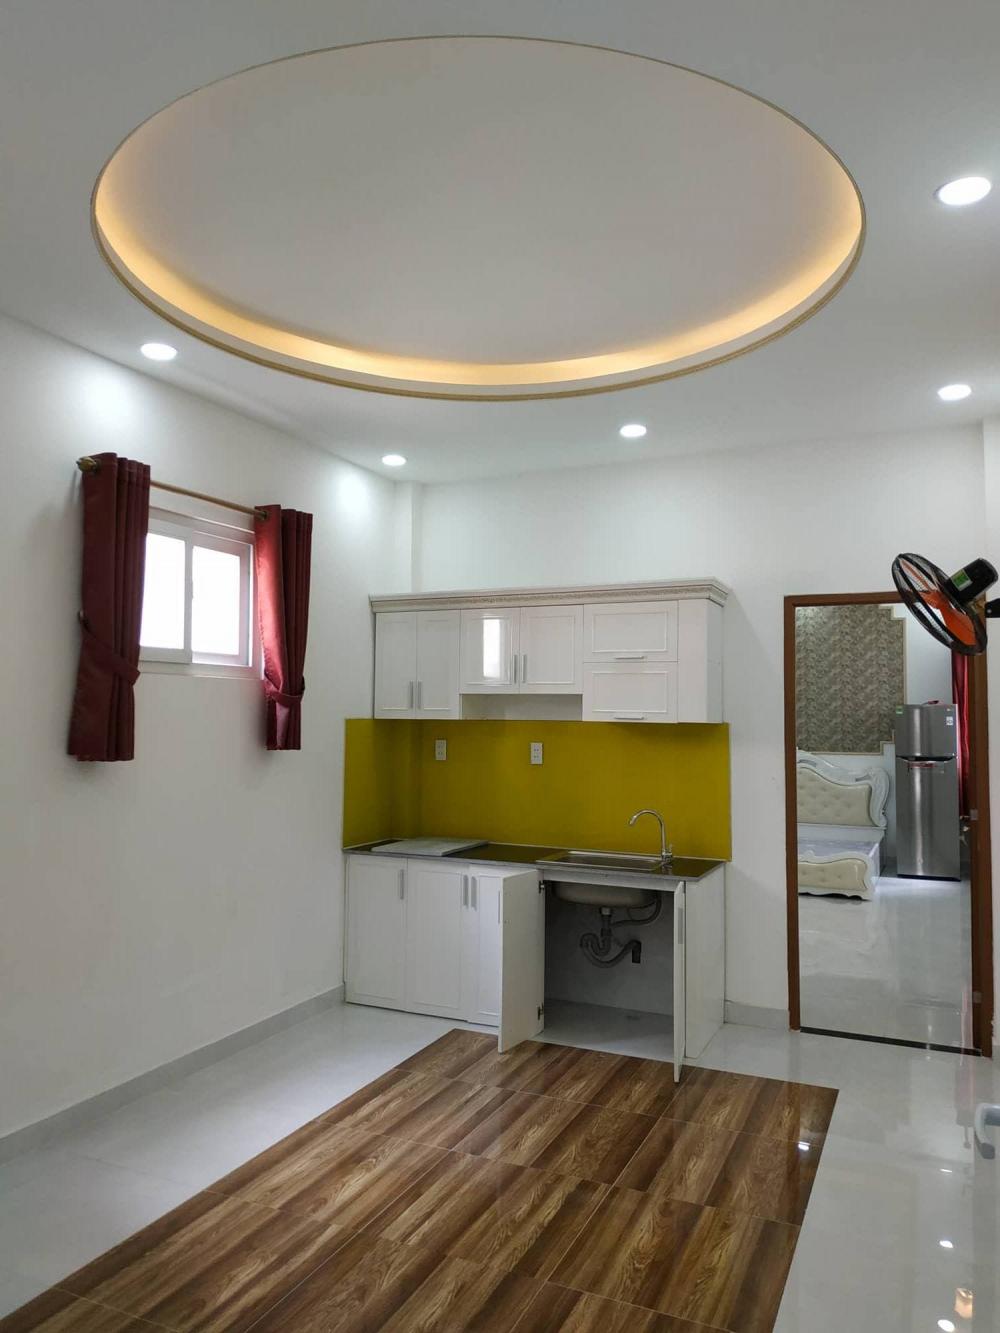 Cho thuê chung cư tại đường Lê Văn Sỹ, Phú Nhuận, TP. HCM. Diện tích 50m2, giá 11.5 triệu/tháng